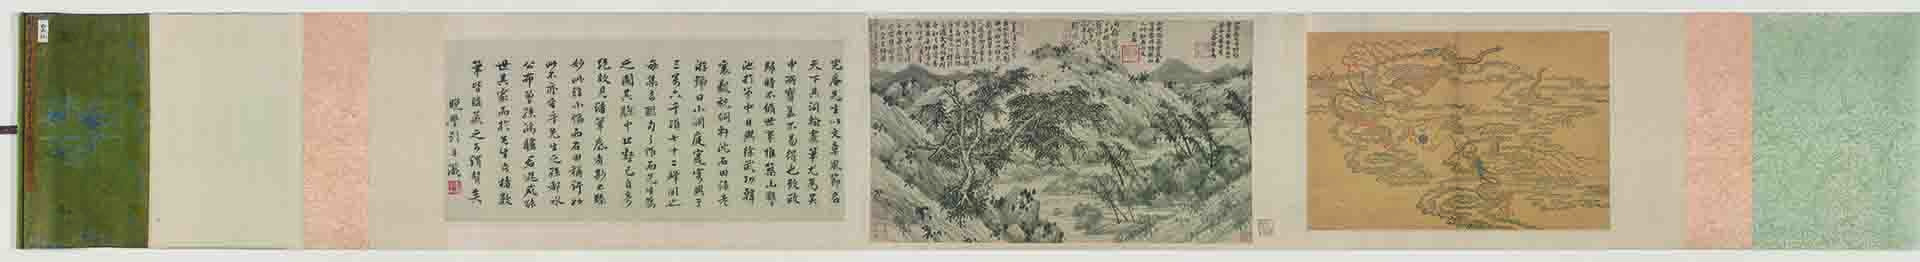 明 刘珏 诗画卷纸本33.6 x 57.8